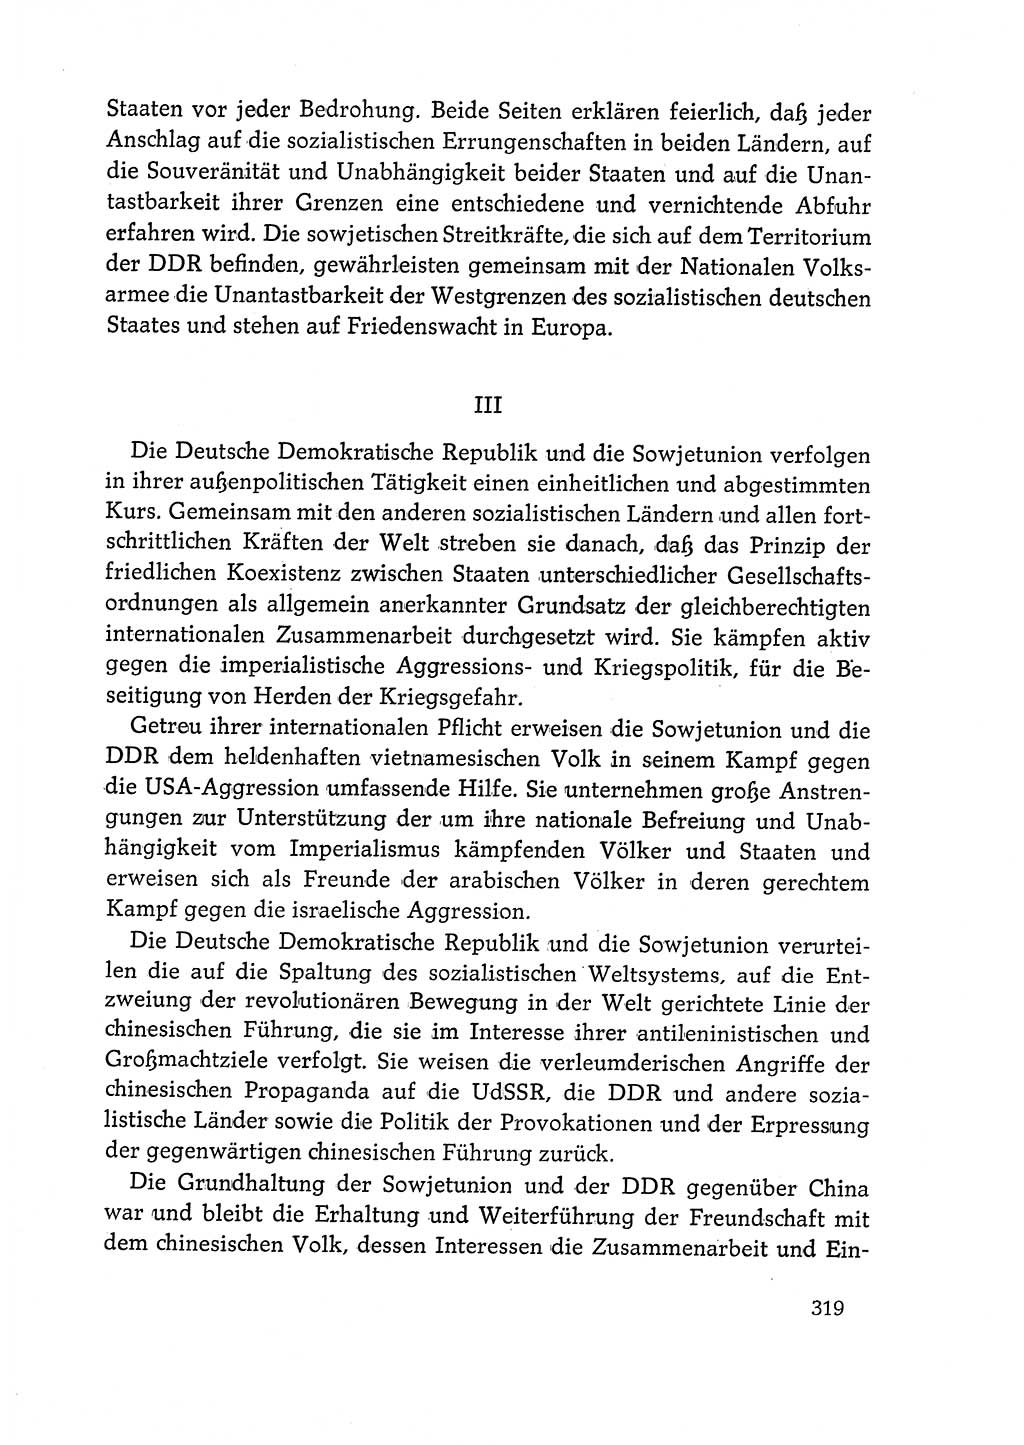 Dokumente der Sozialistischen Einheitspartei Deutschlands (SED) [Deutsche Demokratische Republik (DDR)] 1968-1969, Seite 319 (Dok. SED DDR 1968-1969, S. 319)